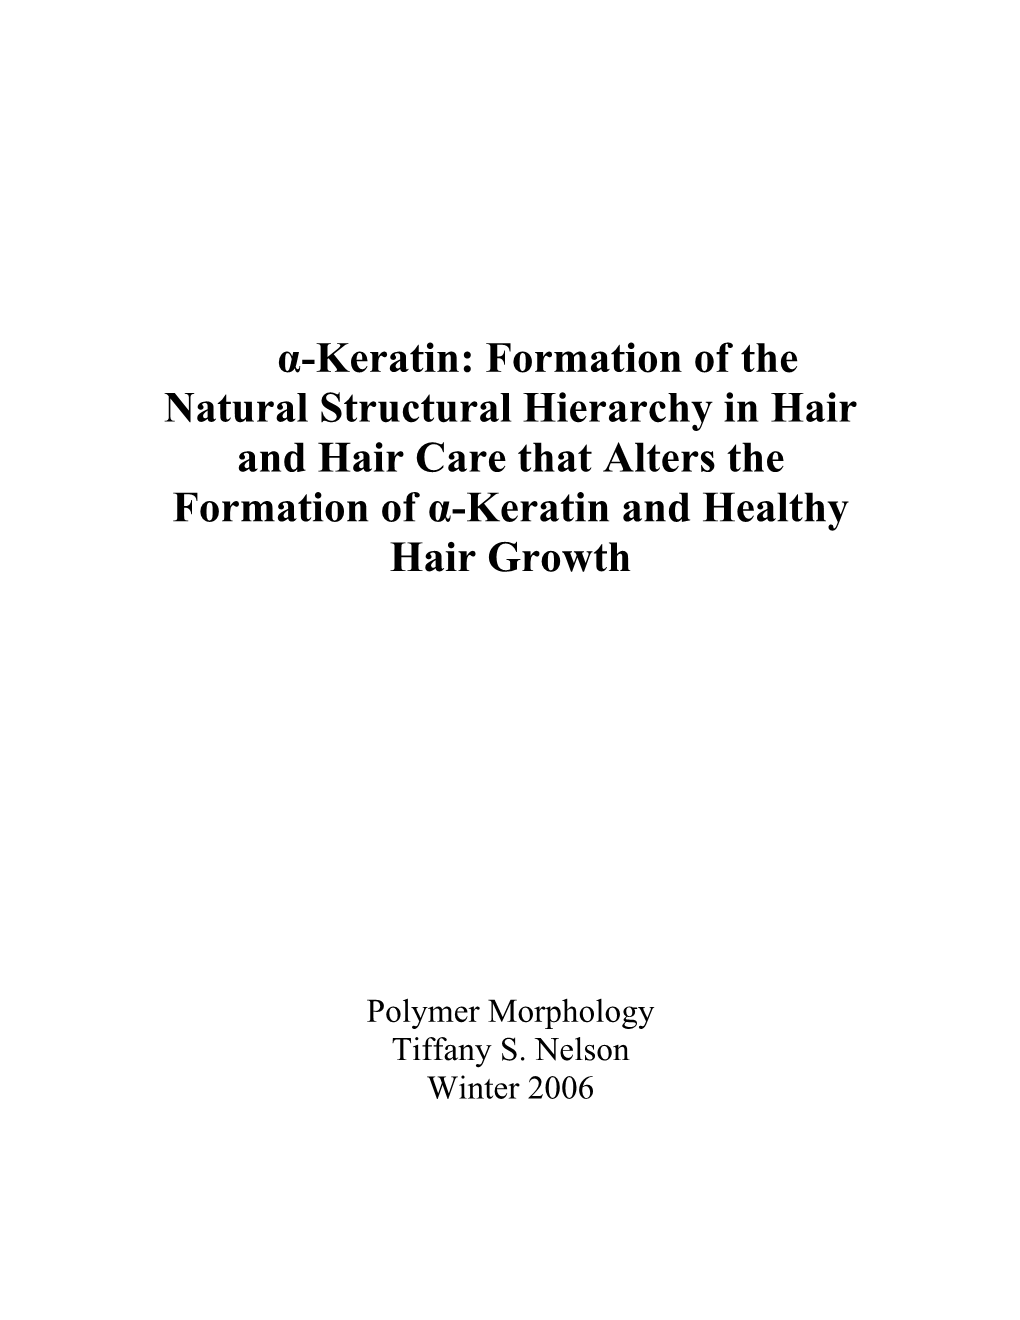 Α-Keratin: Formation of the Natural Structural Hierarchy in Hair and Hair Care That Alters the Formation of Α-Keratin and Healthy Hair Growth